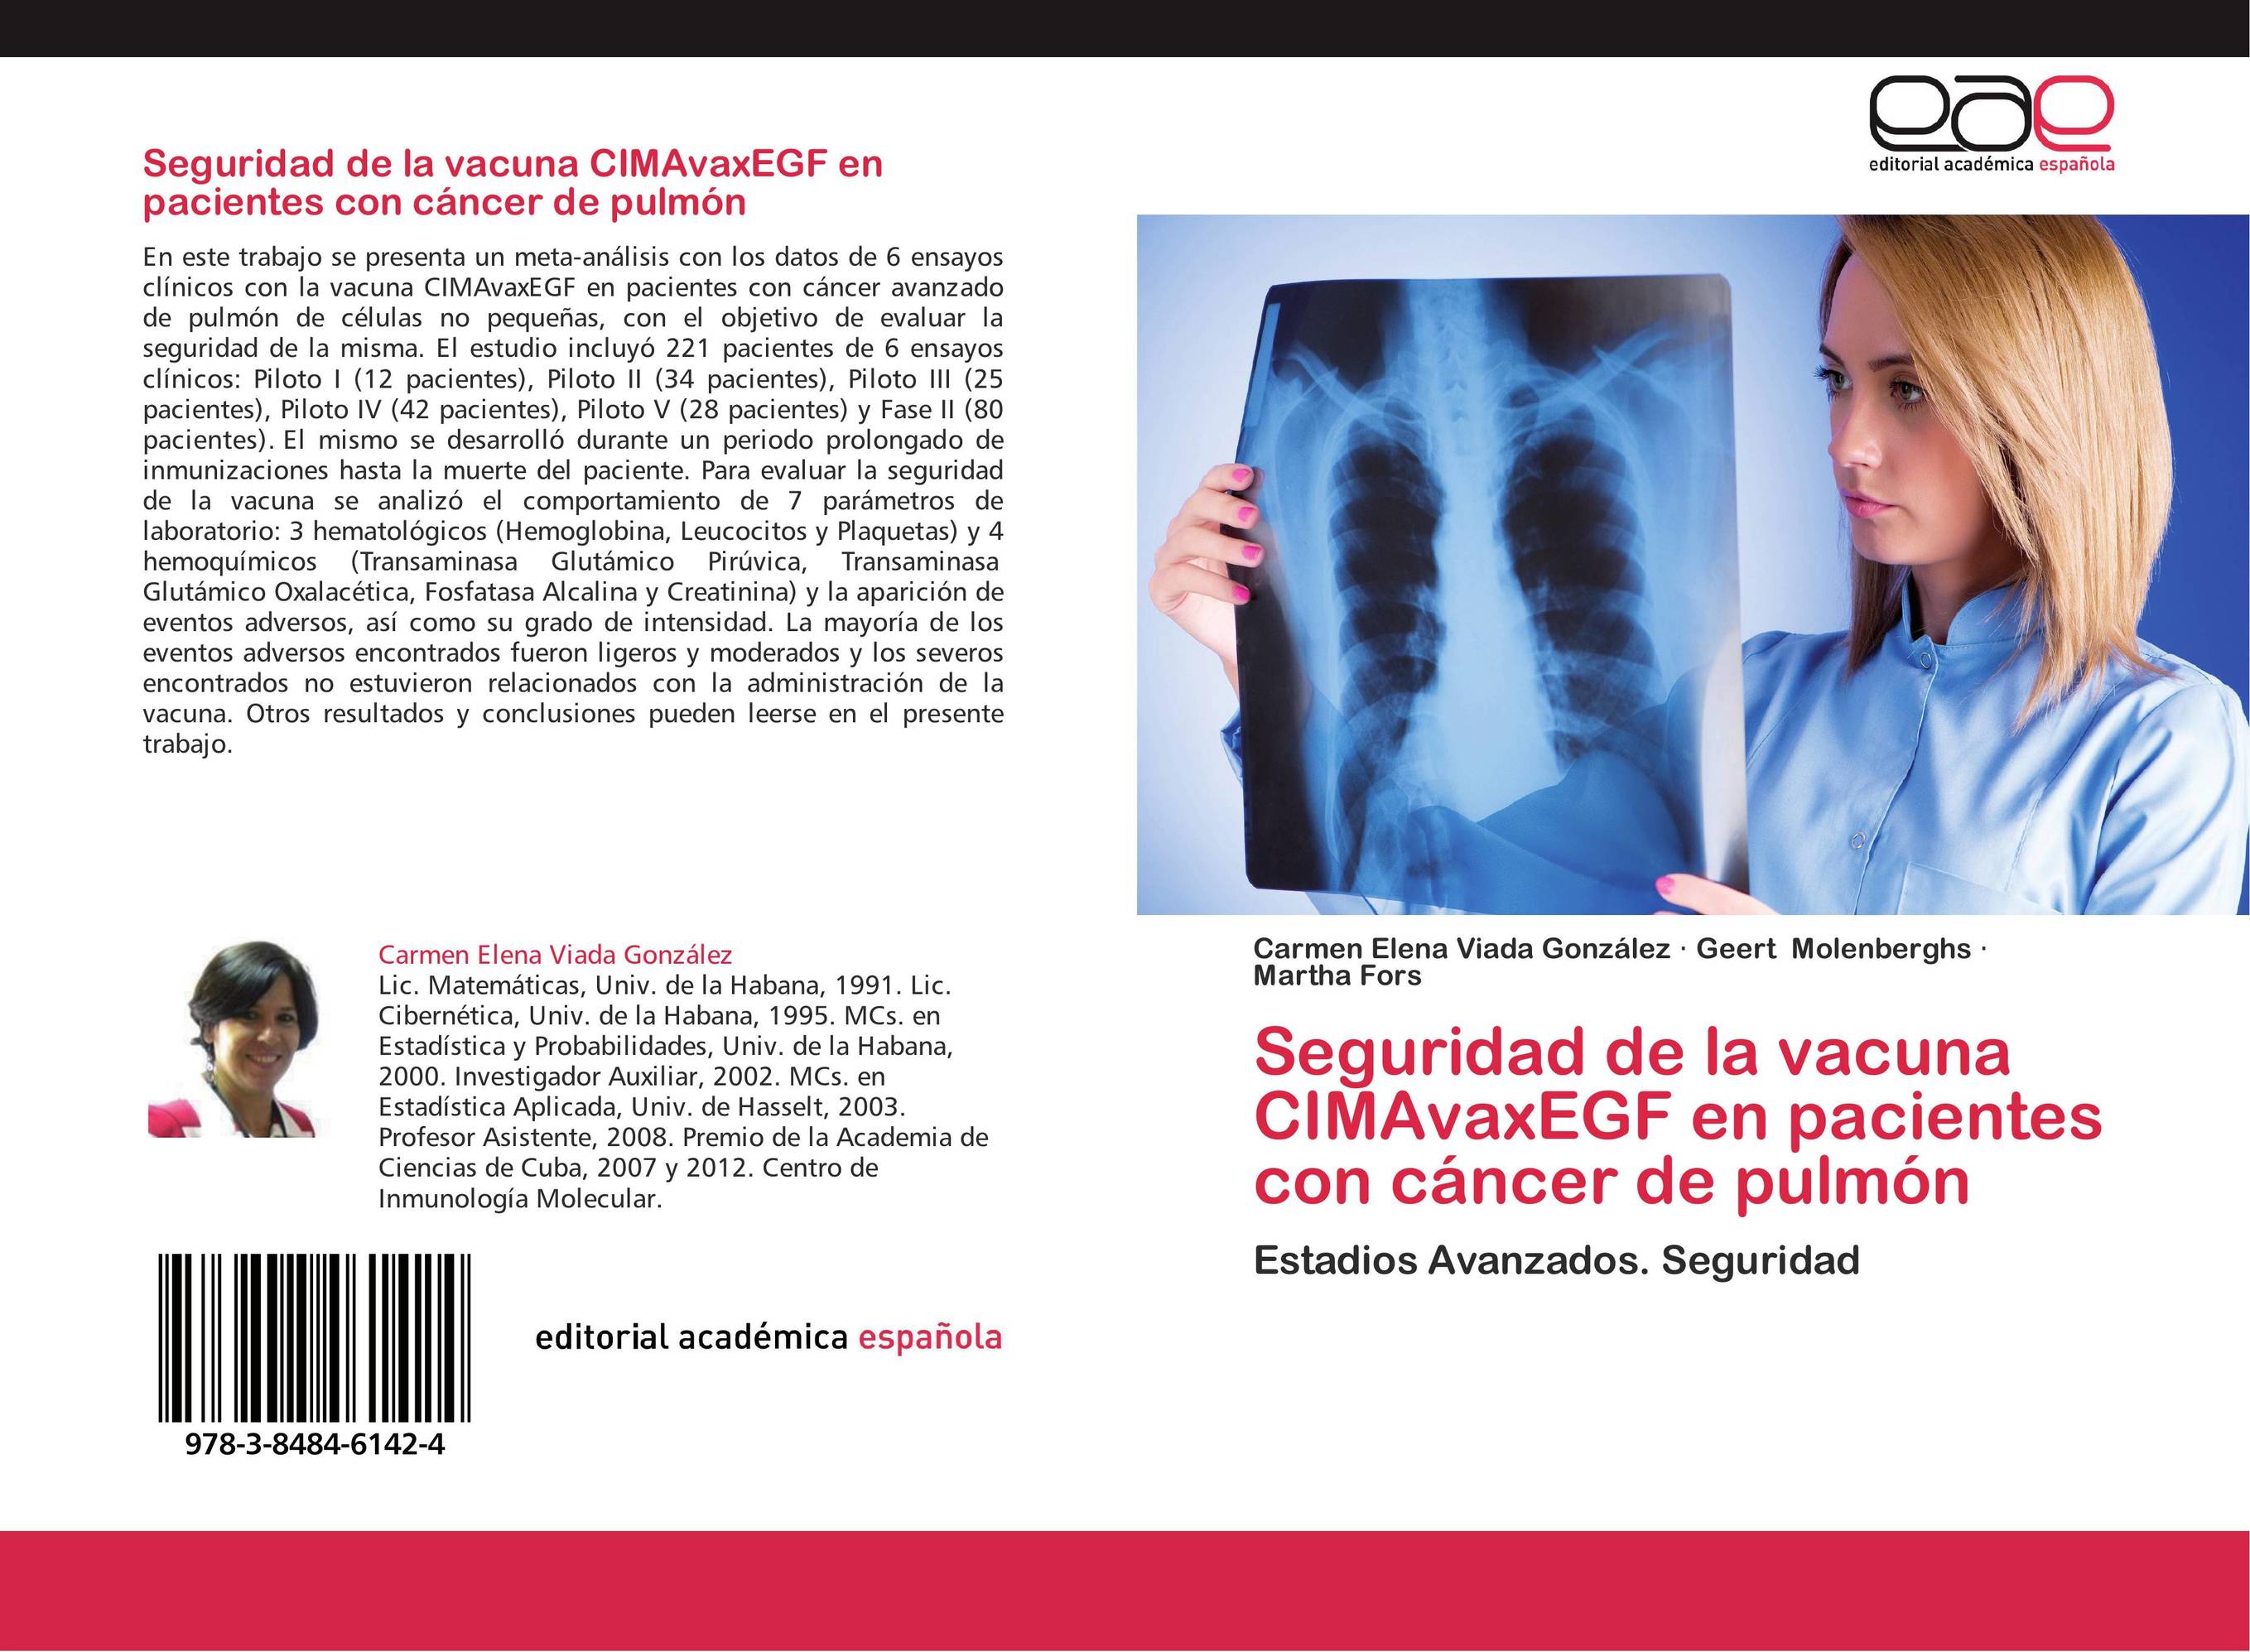 Seguridad de la vacuna CIMAvaxEGF en pacientes con cáncer de pulmón